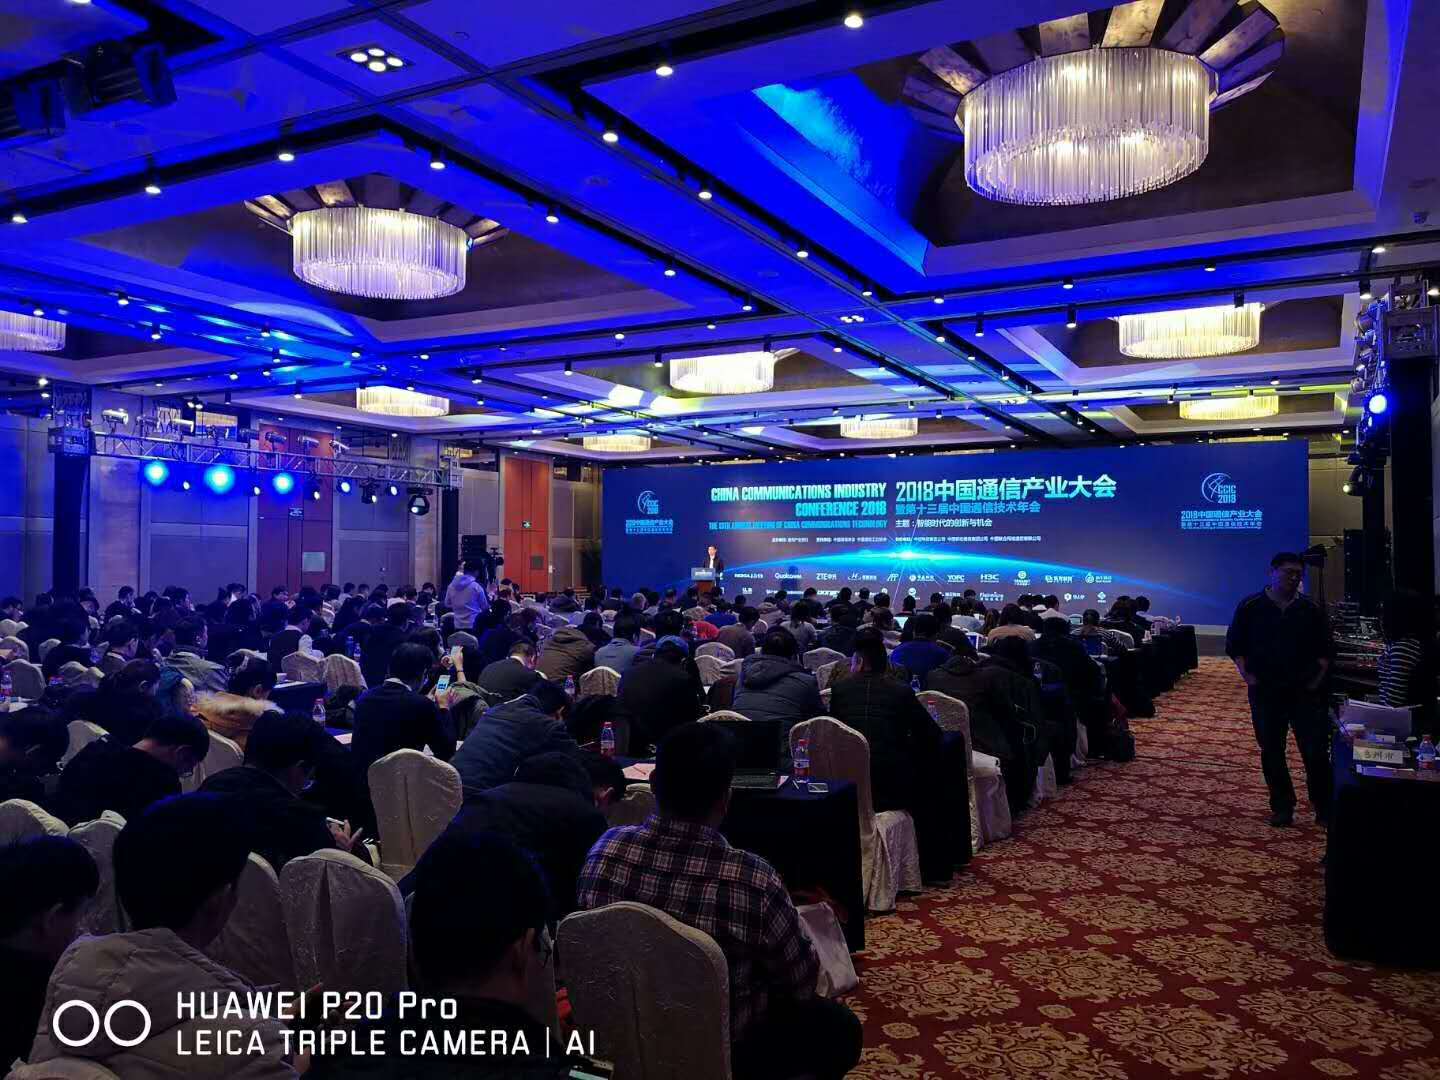 2019年度中国通信产业大会暨第十三届中国通信技术年会